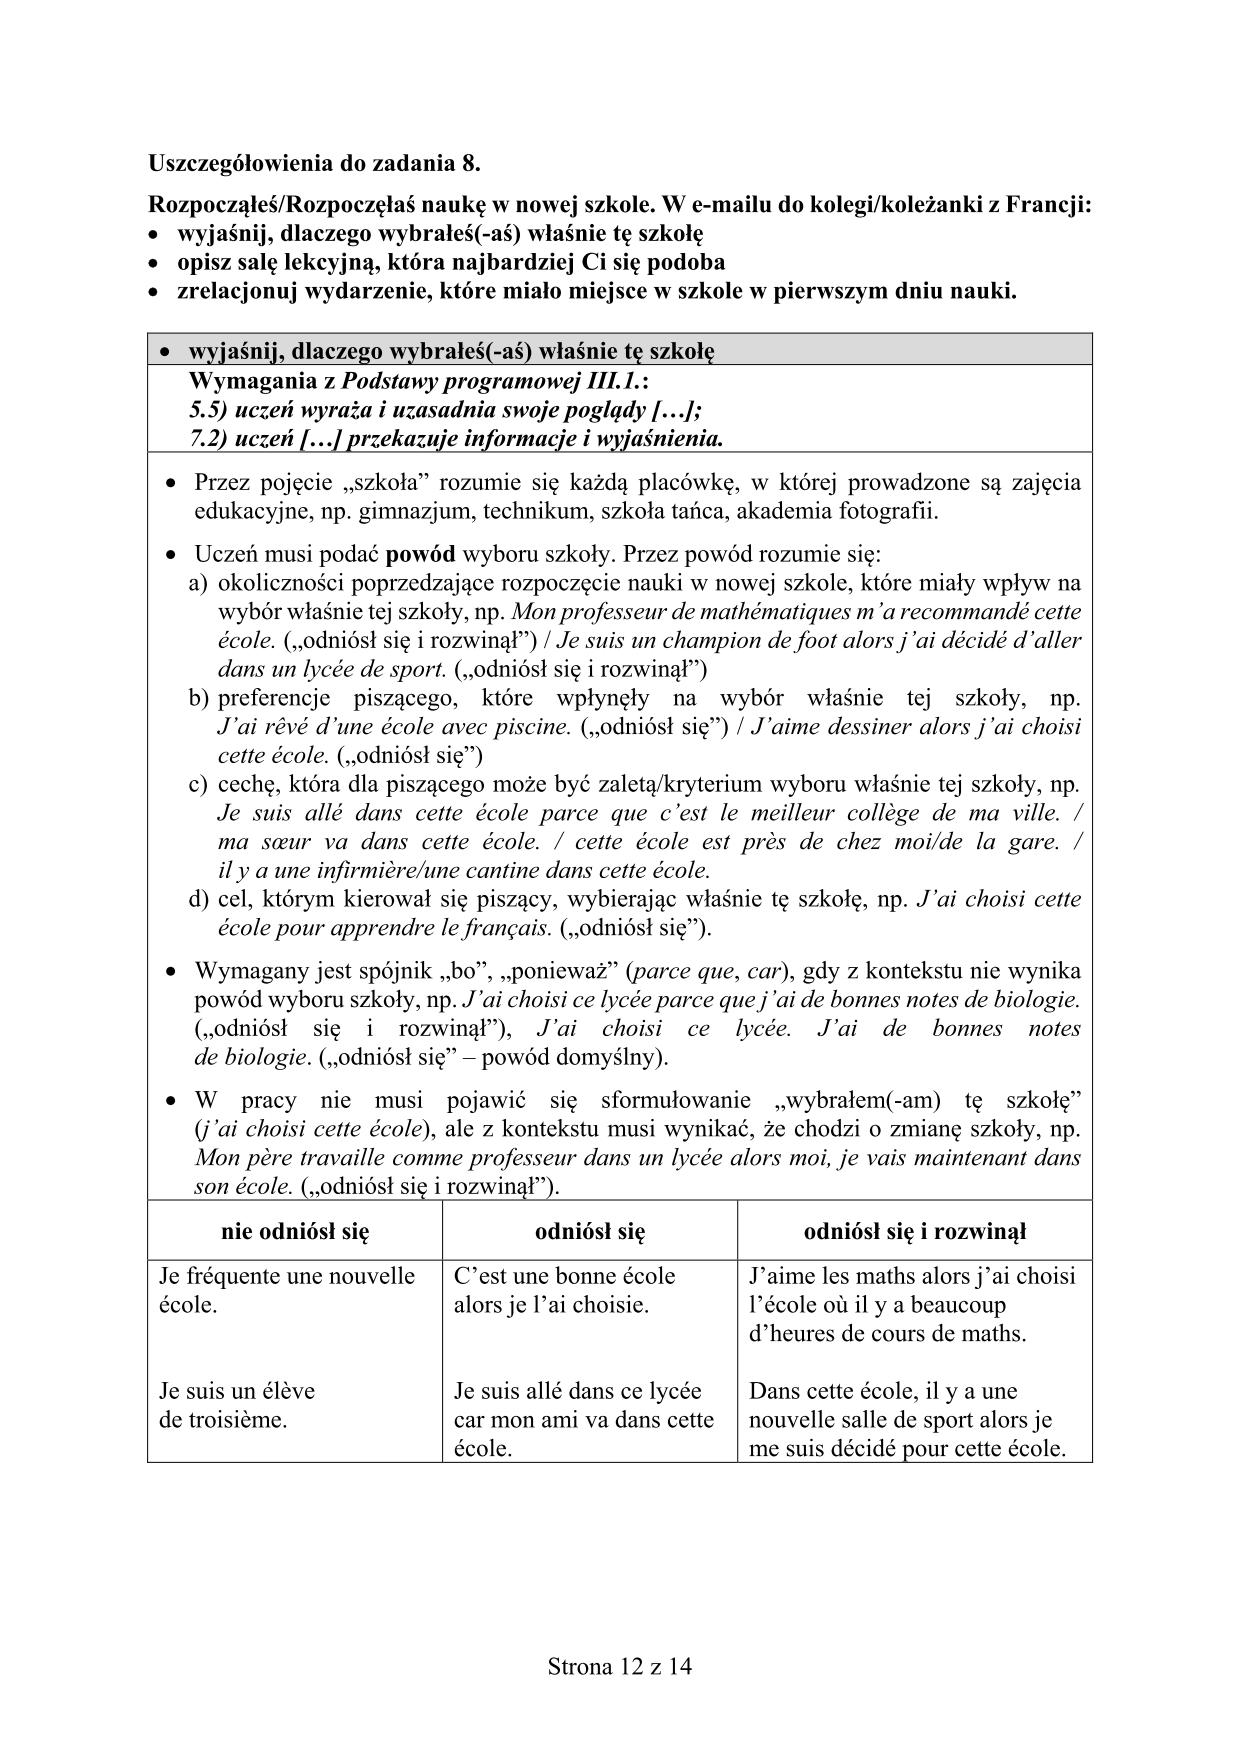 odpowiedzi-francuski-poziom-rozszerzony-egzamin-gimnazjalny-2016-12